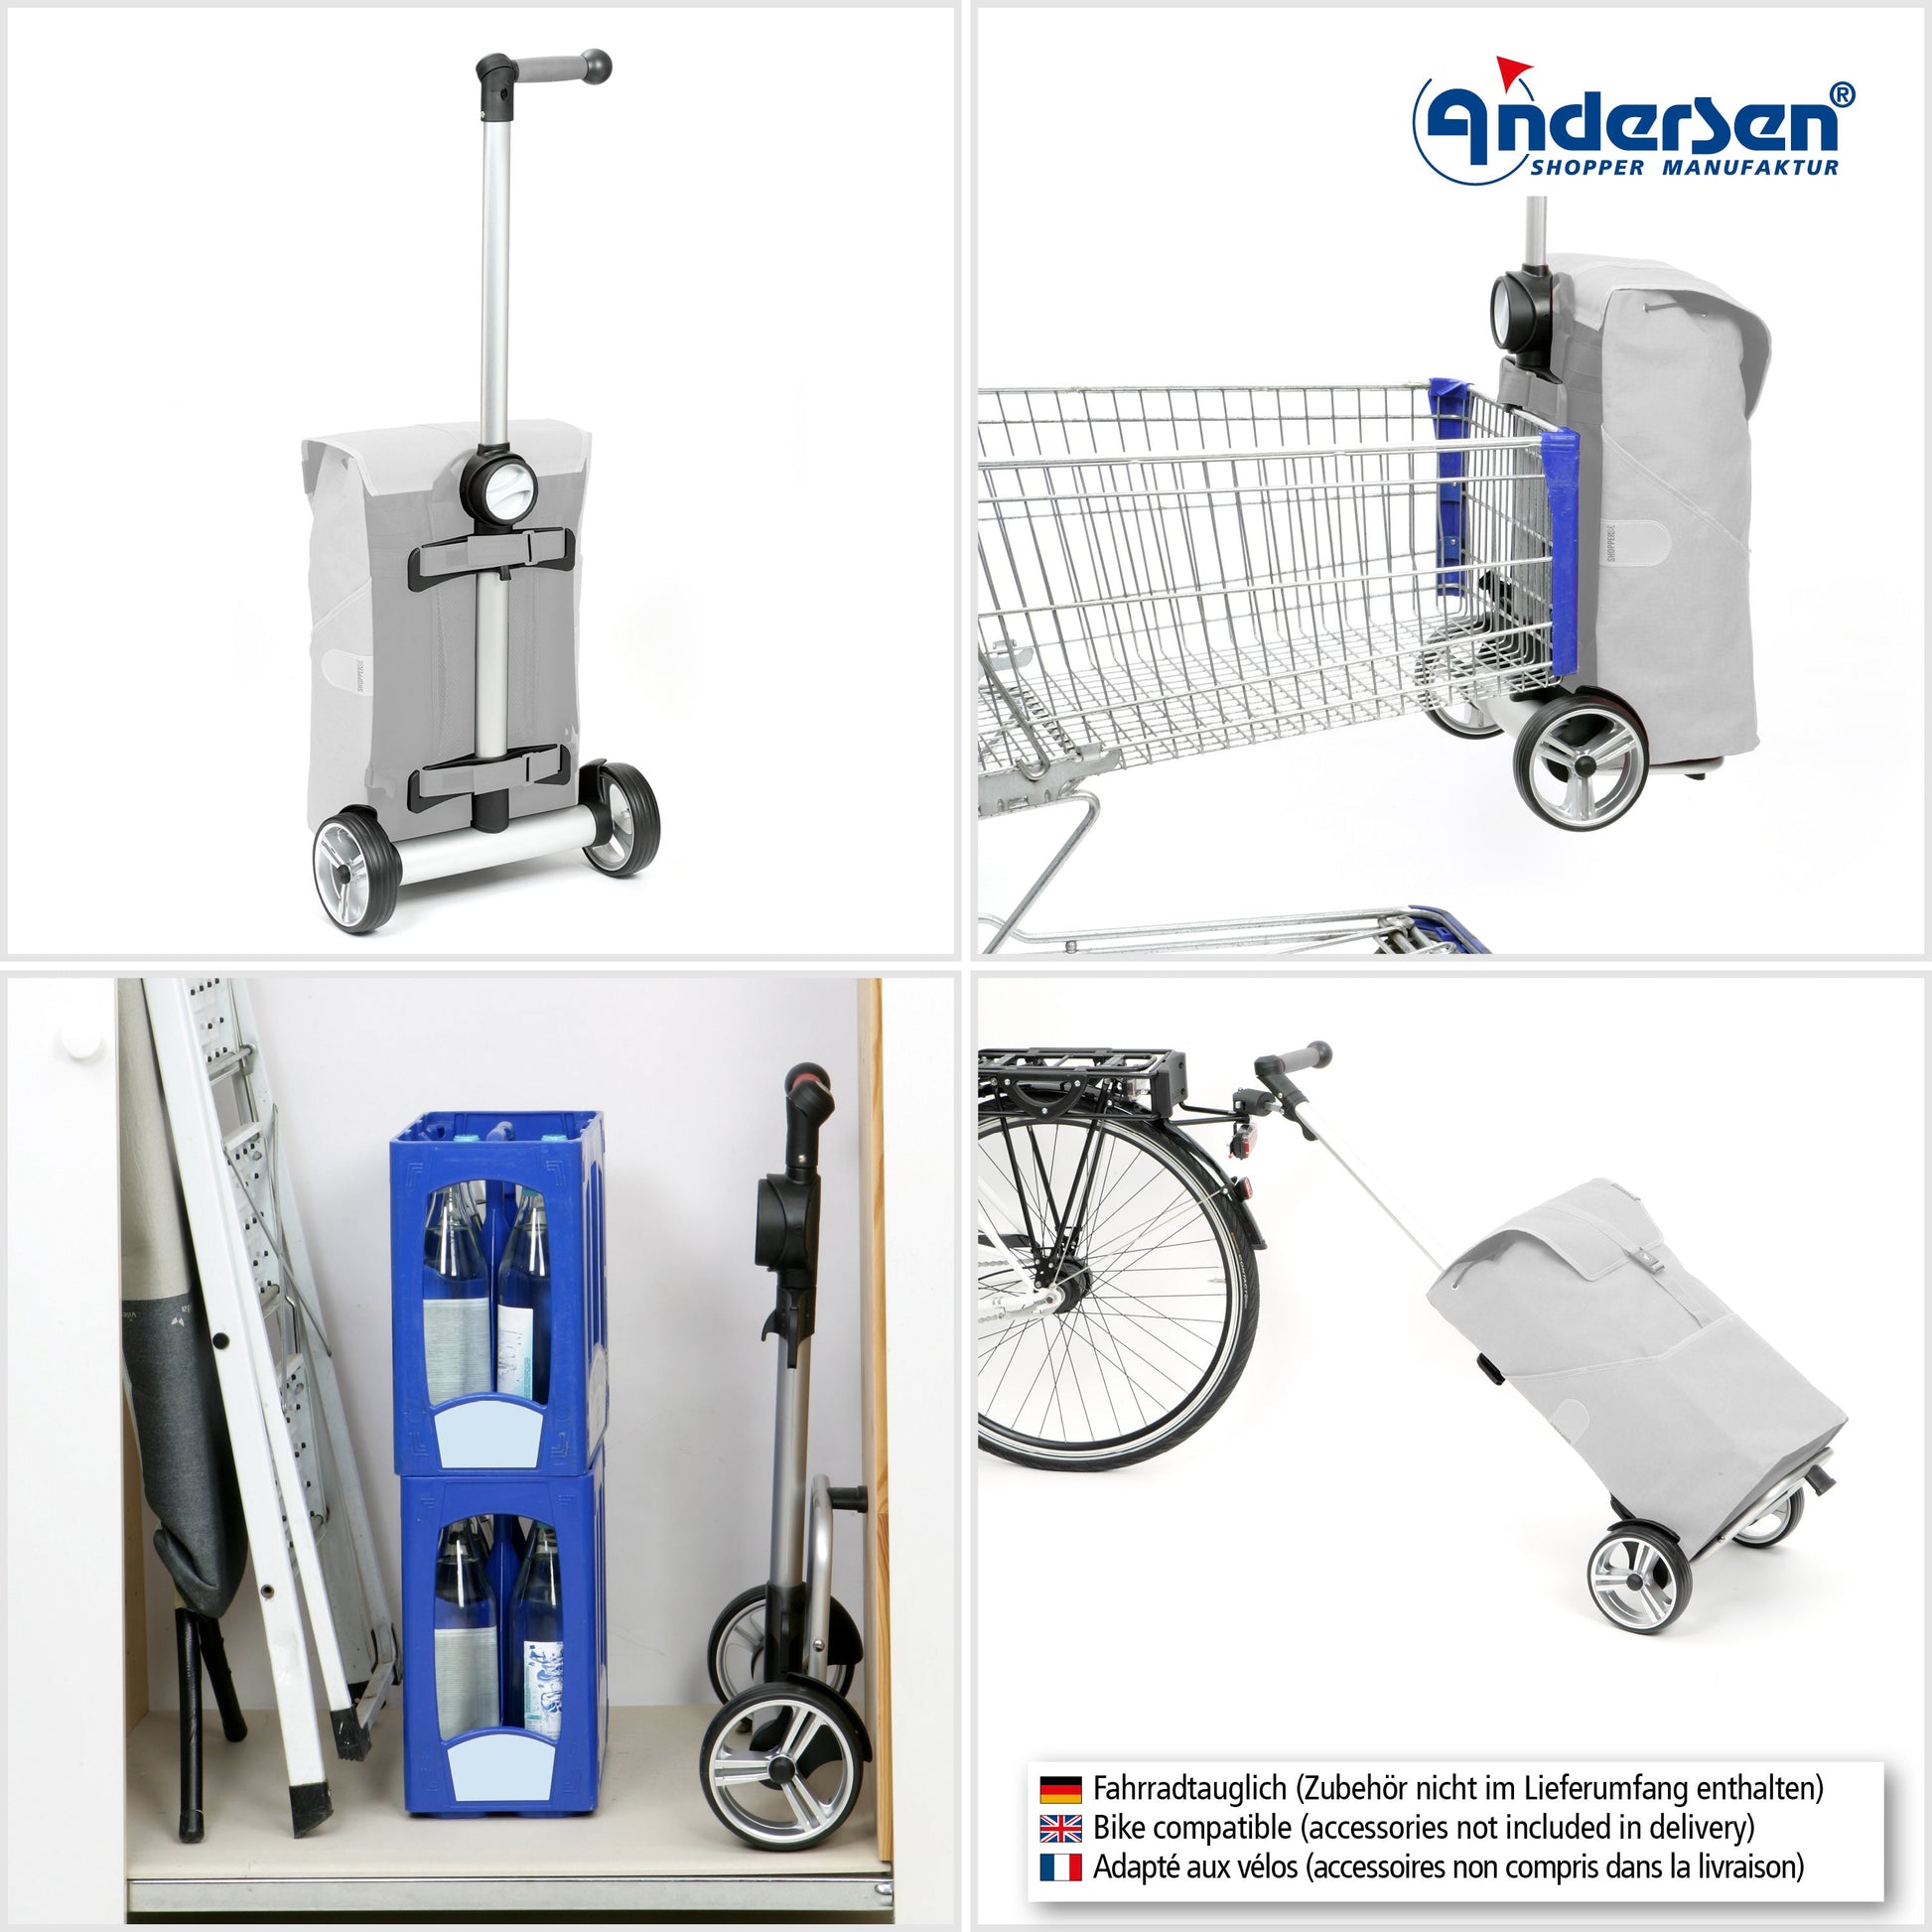 Andersen Shopper Manufaktur-Unus Shopper Basil Bloom gelb-www.shopping-trolley.ch-bild5